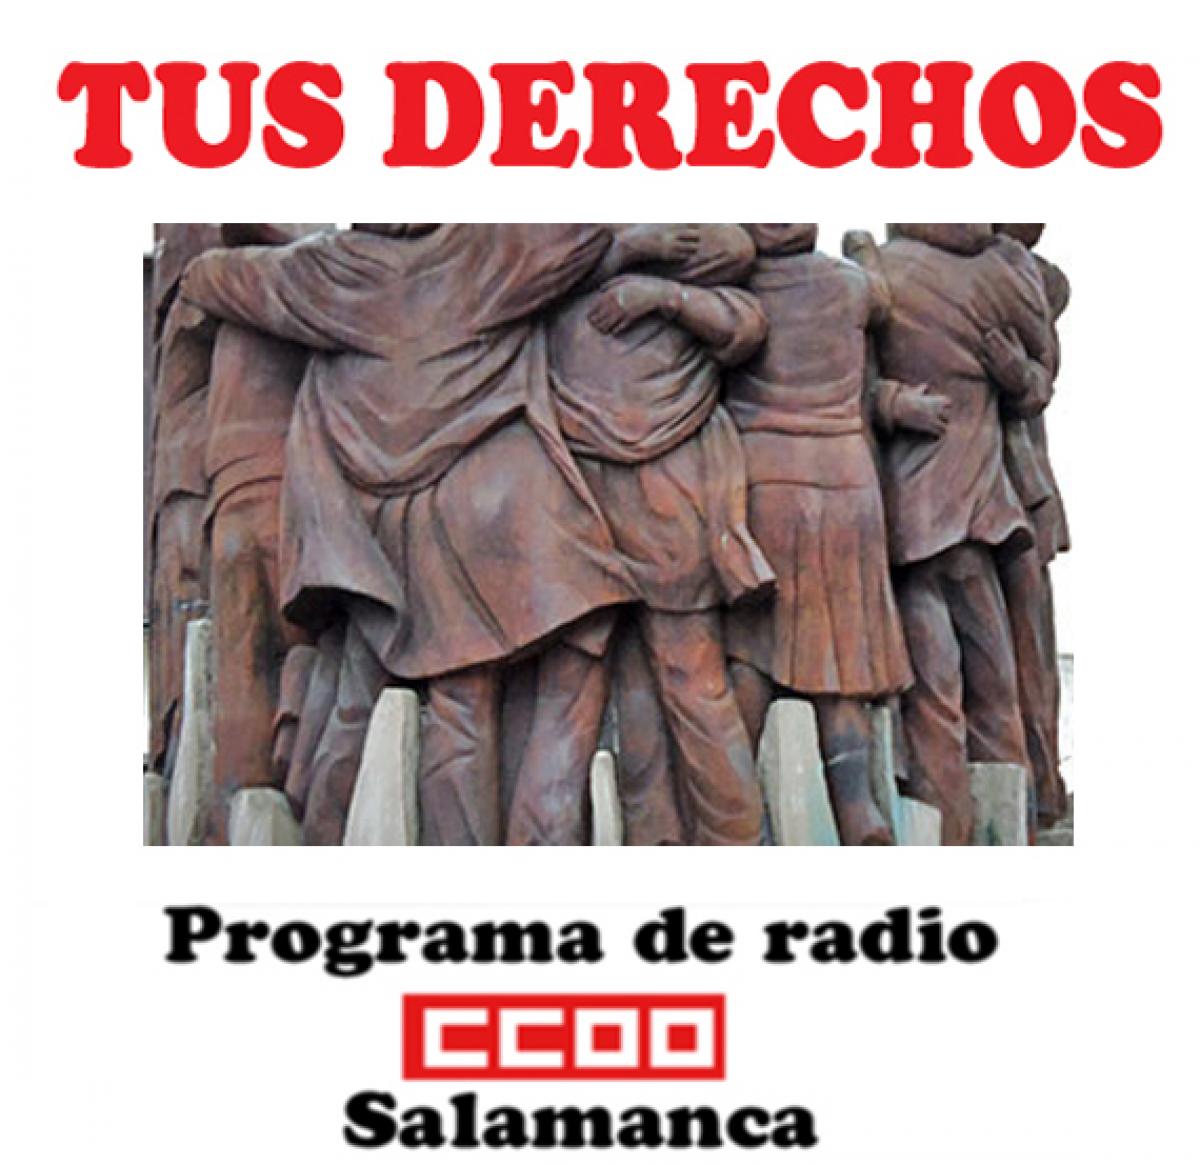 Programa de radio "Tus derechos" de CCOO en Salamanca. Escúchalo aquí